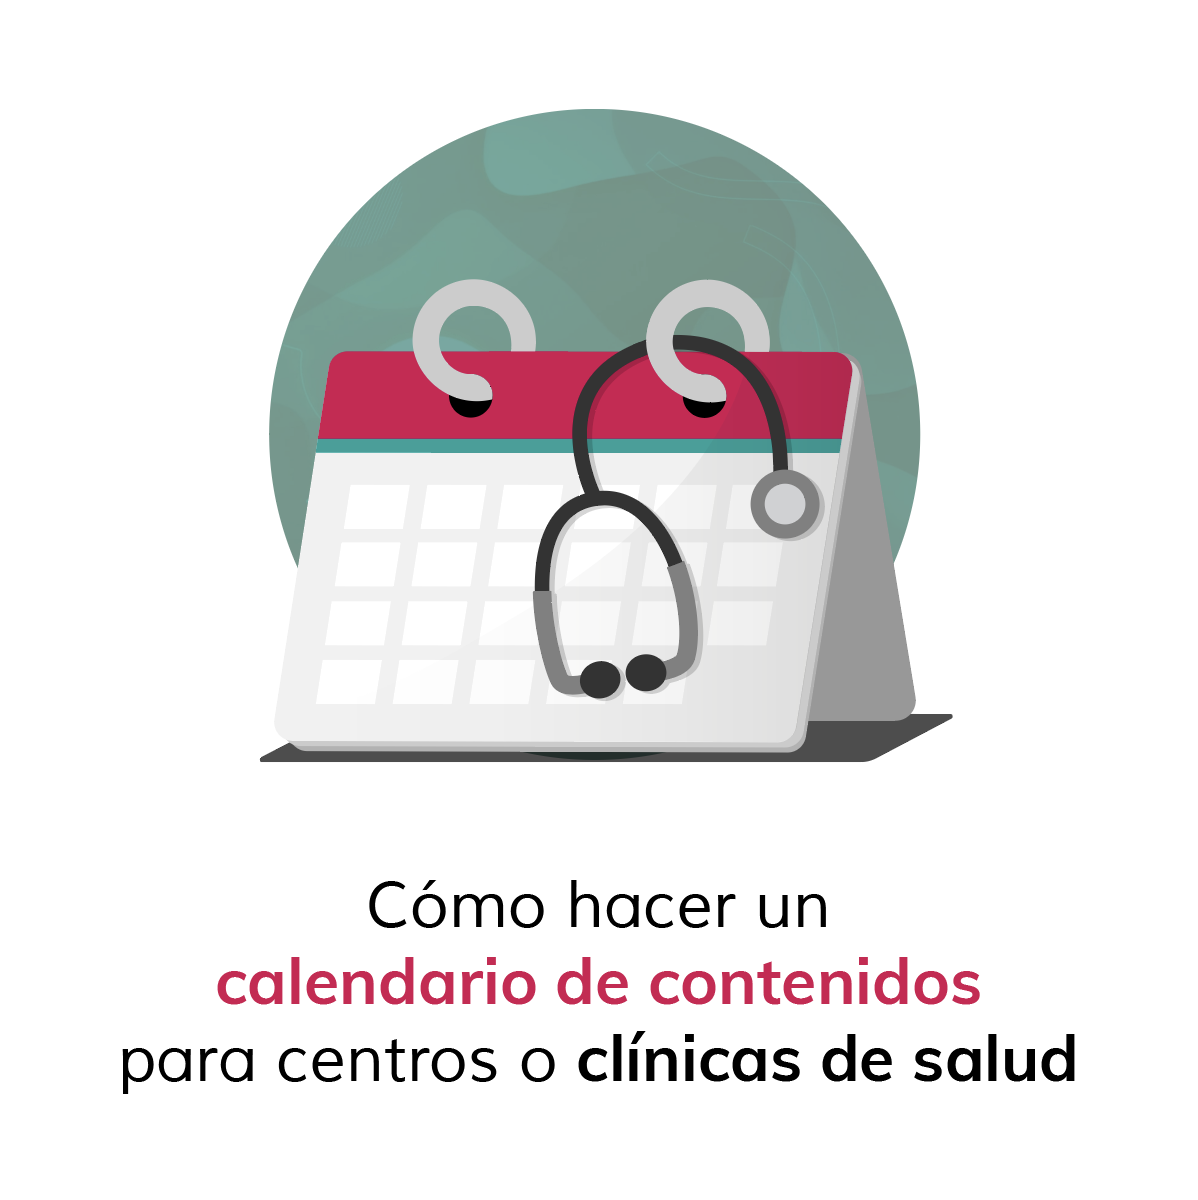 Cómo hacer un calendario de contenidos para centros o clínicas de salud